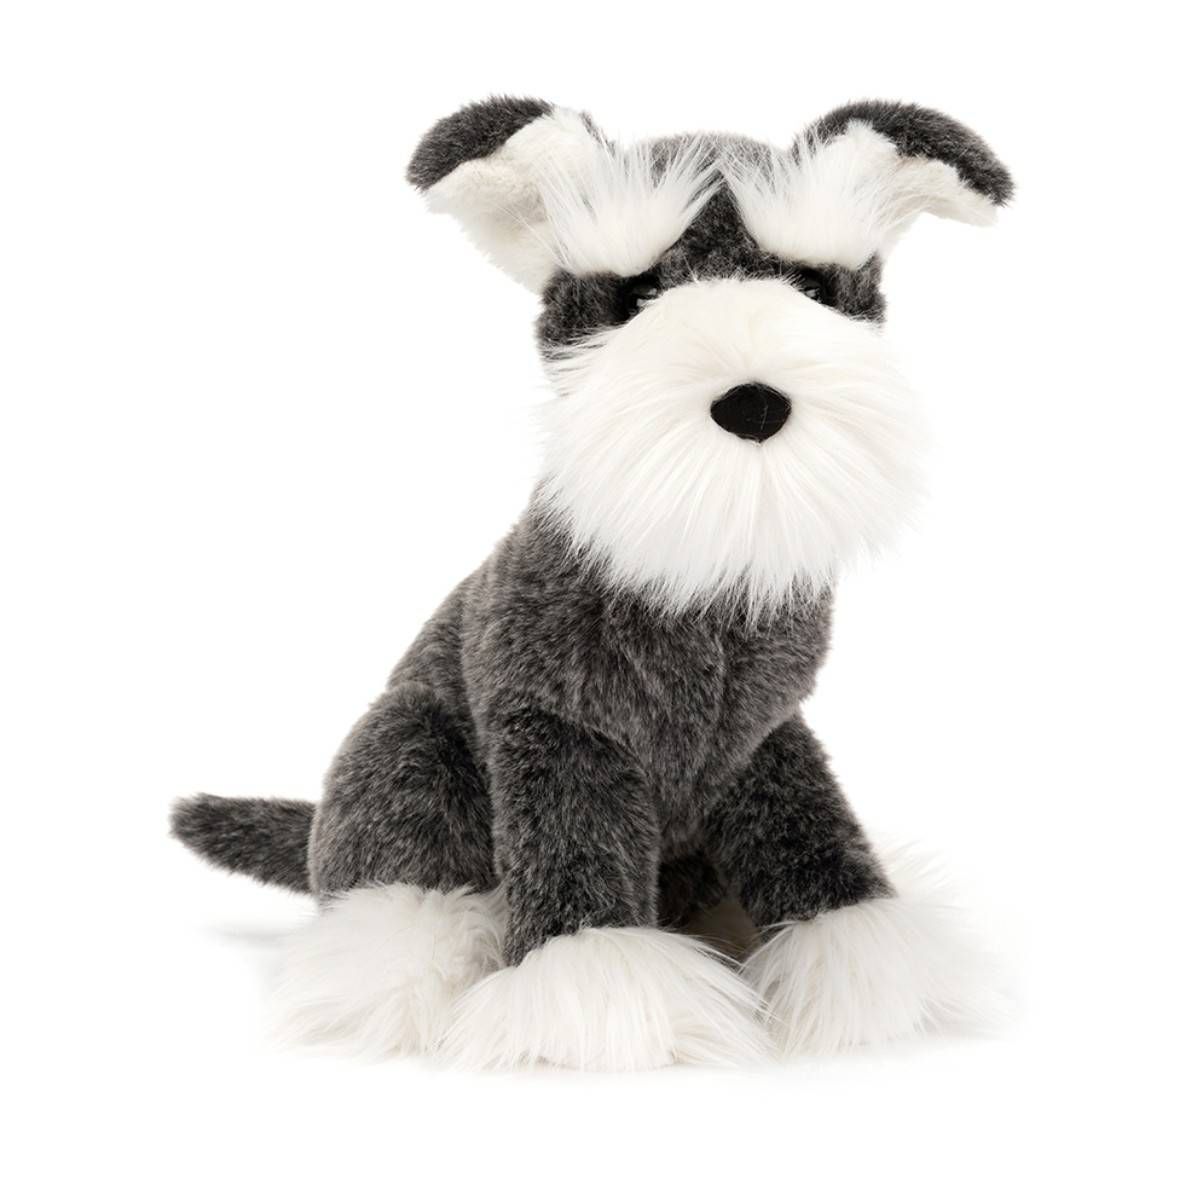 Jellycat schnauzer hund med grå pels og hvid længere pels som skæg, øjenbryn og støvler